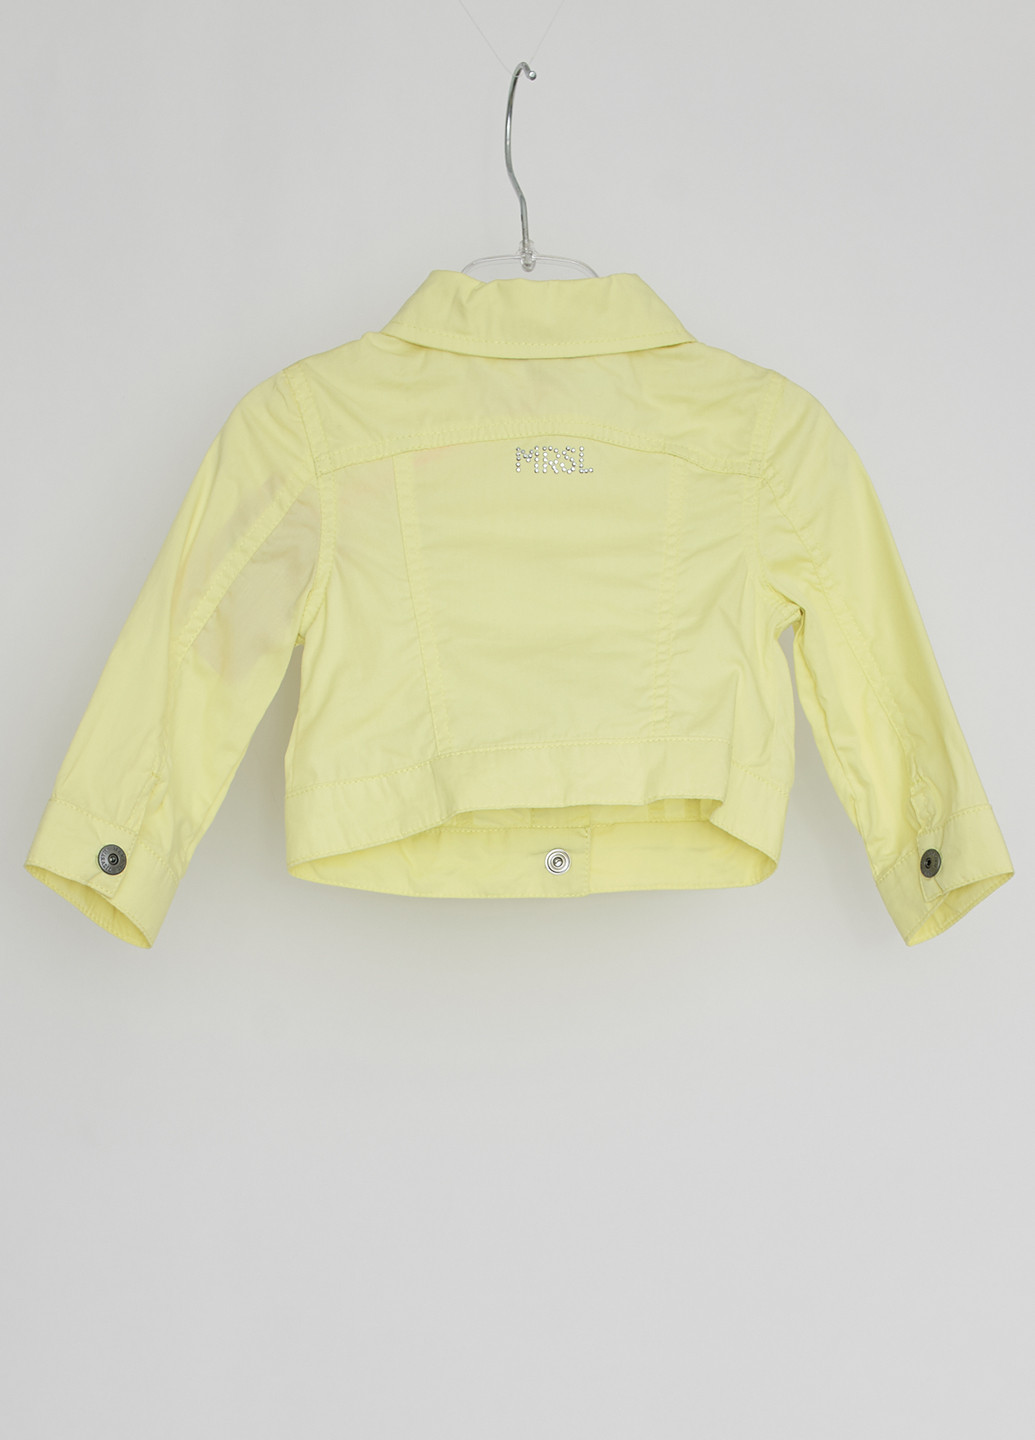 Лимонна демісезонна куртка Marasil